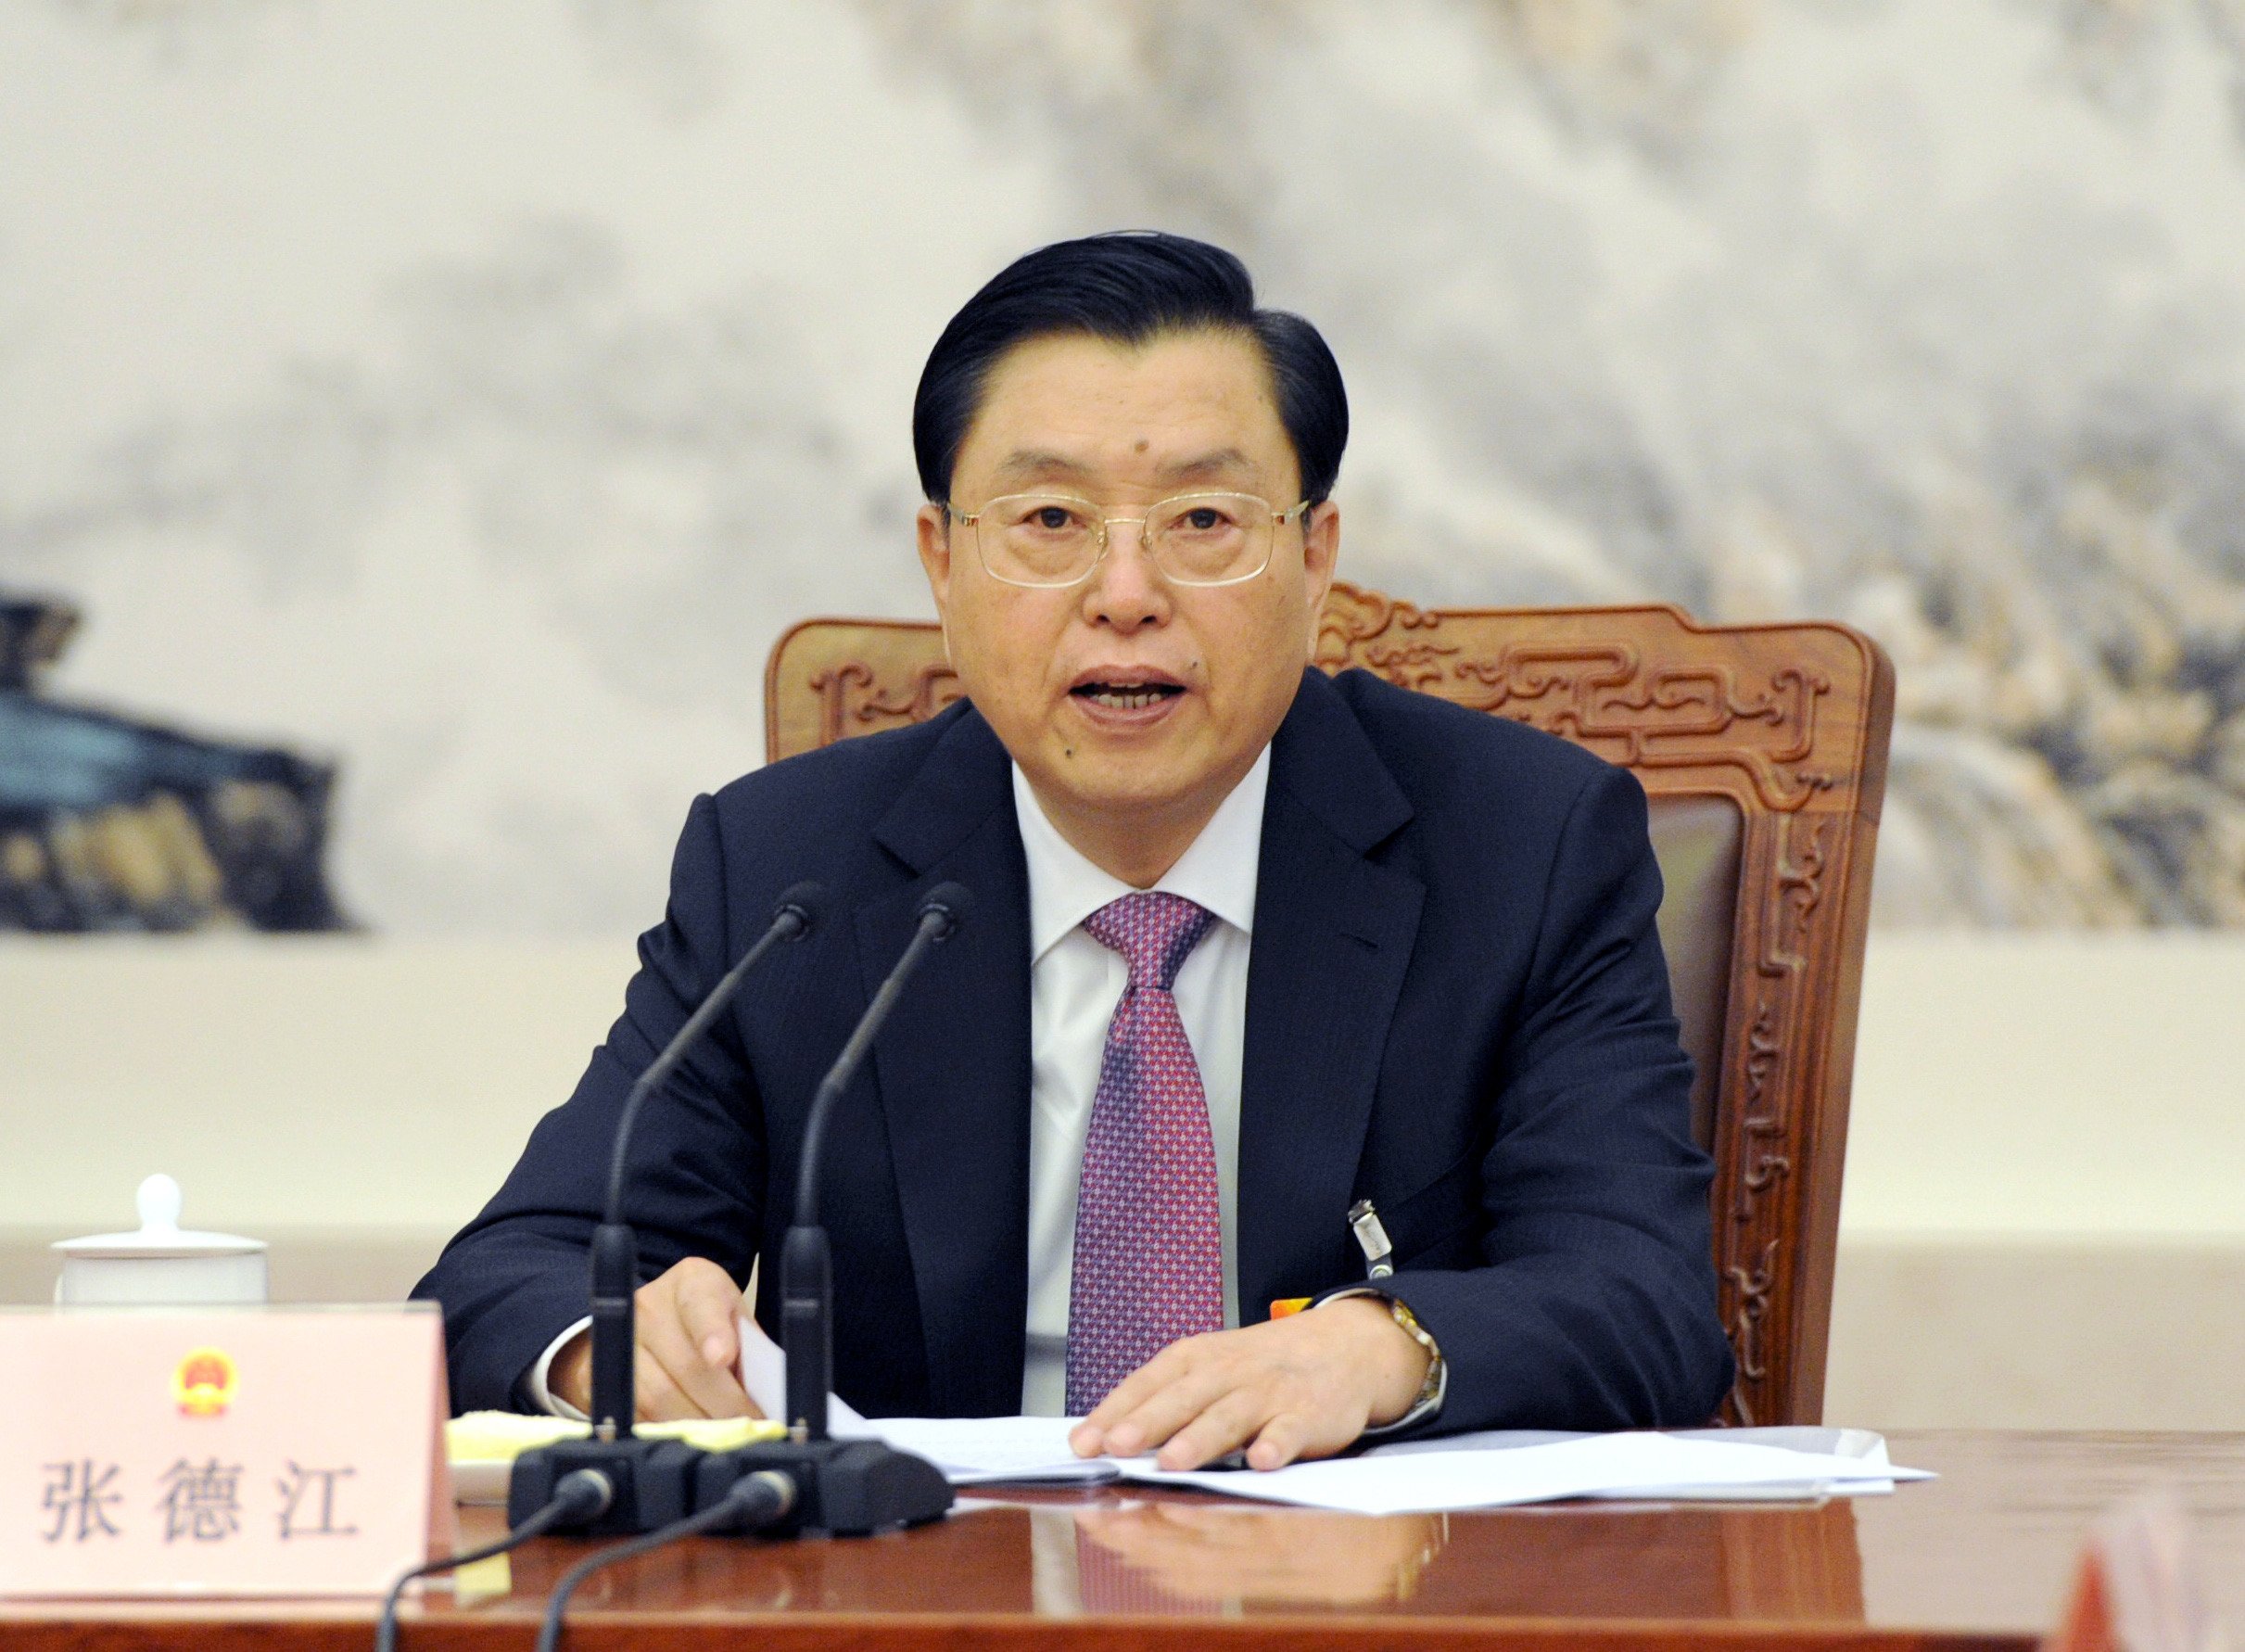 Zhang Dejiang, chairman of the National People's Congress Standing Committee. Photo: Xinhua